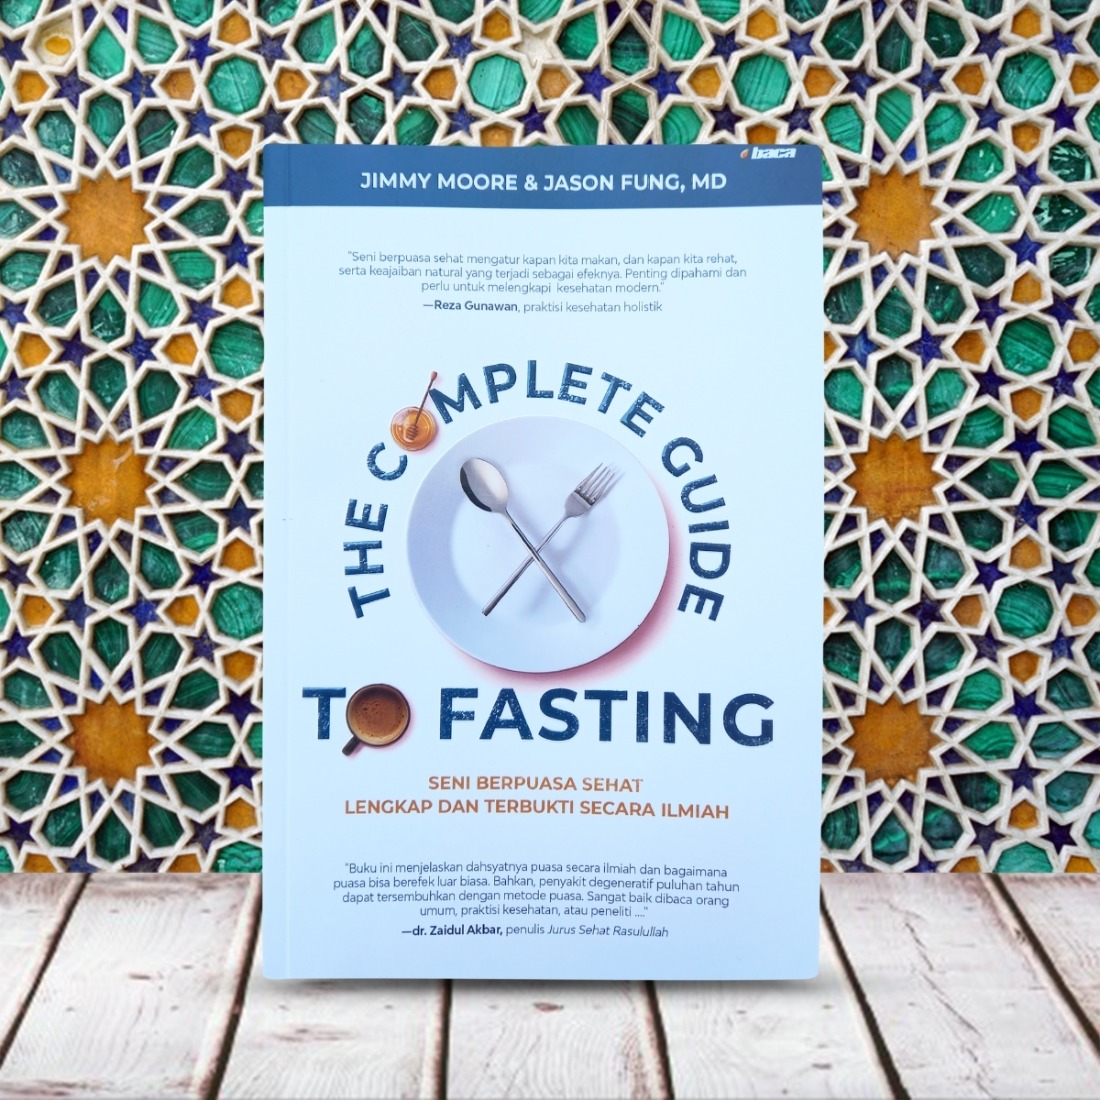 Dr pradip jamnadas fasting program